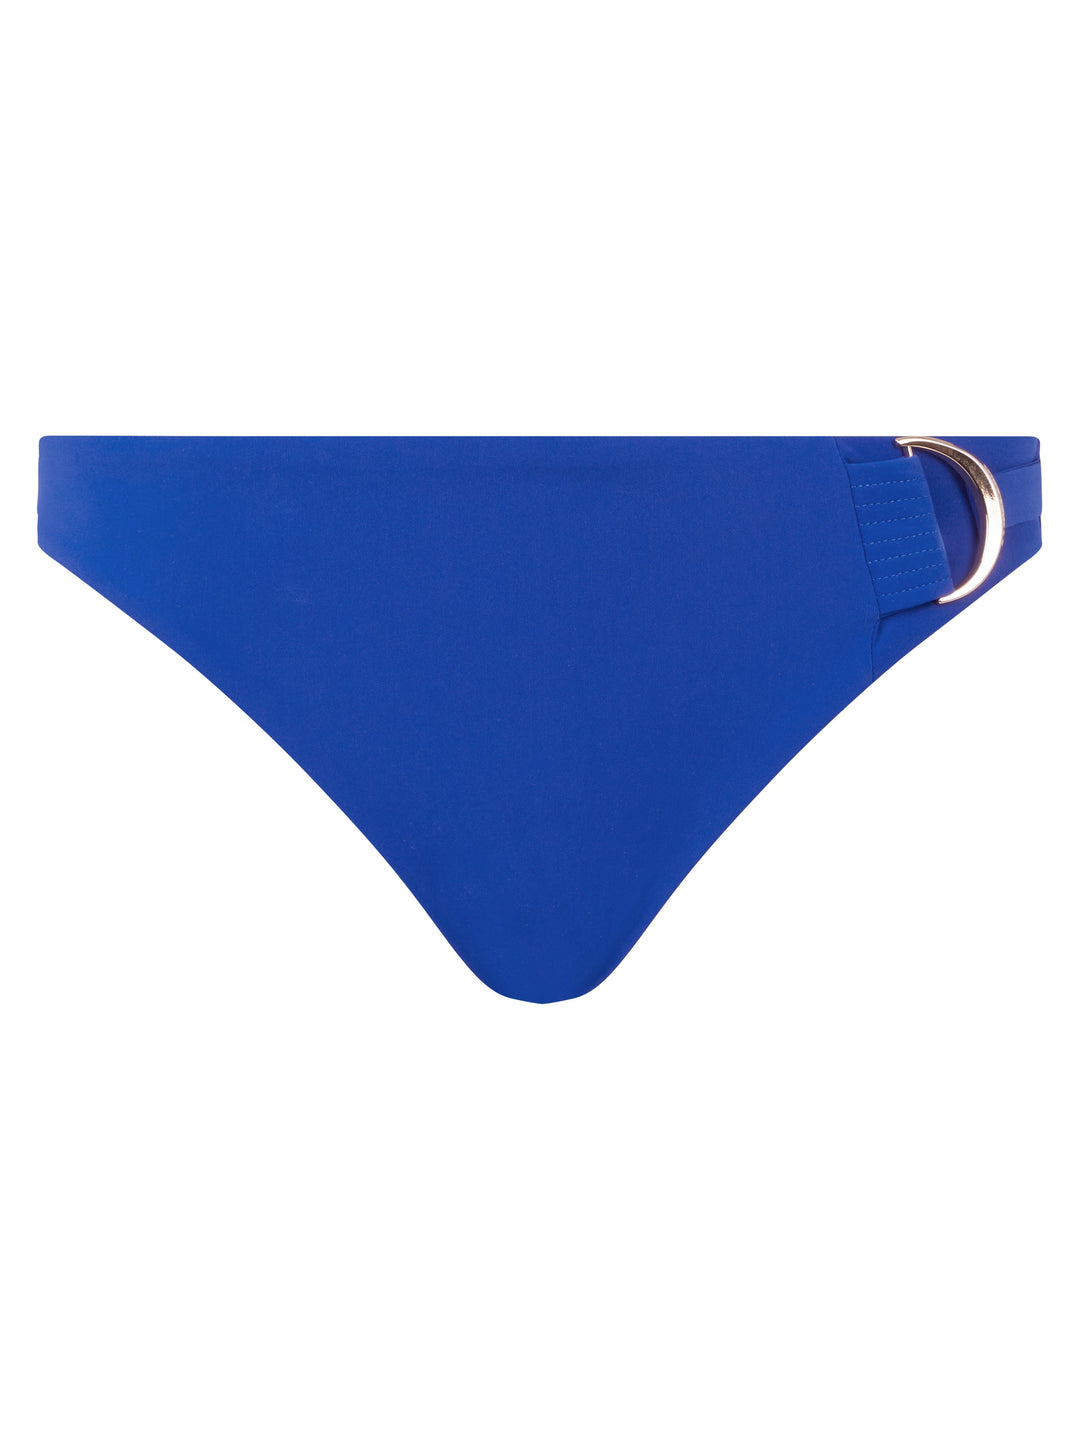 Chantelle Trajes de baño - Braguita de bikini celestial Braguita de bikini azul profundo Chantelle Trajes de baño